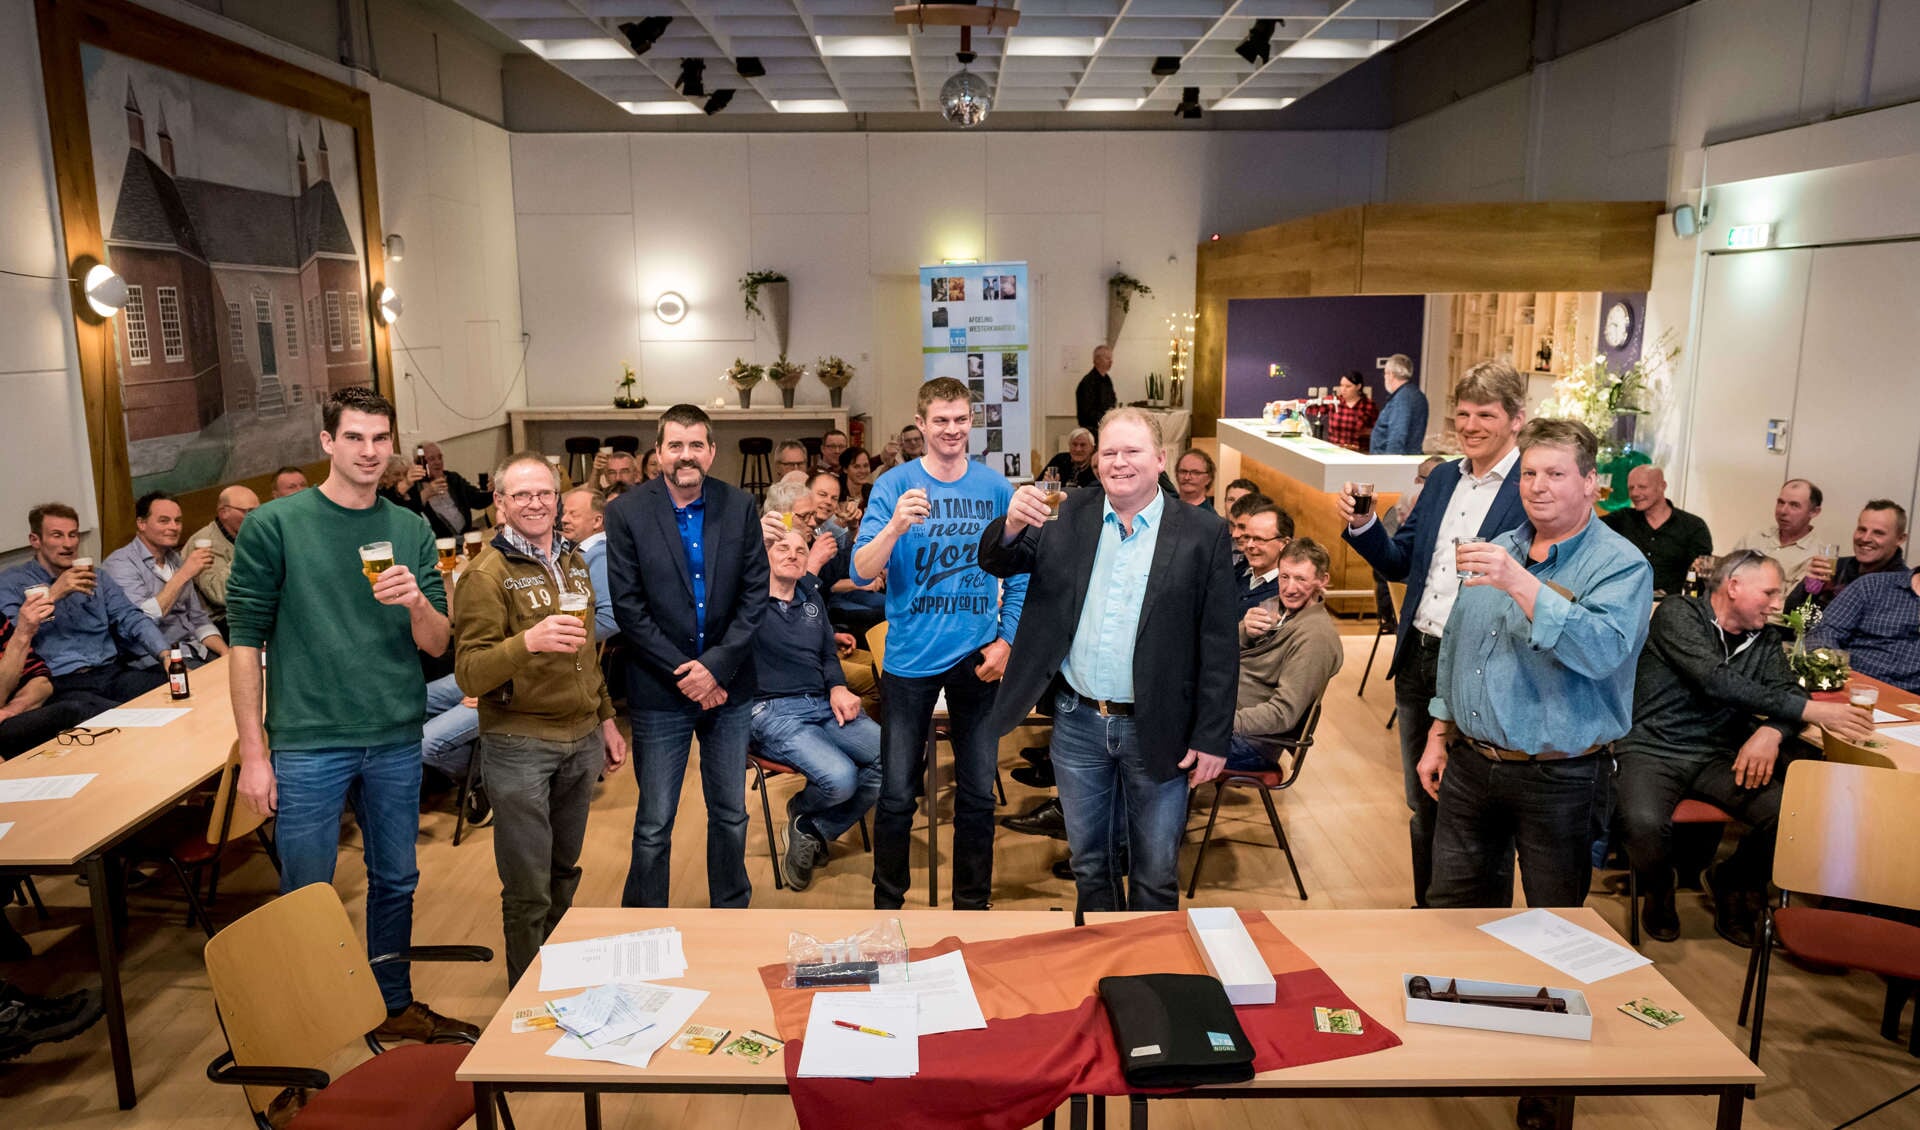 Het nieuwe bestuur van LTO Noord afdeling Westerkwartier heft het glas. Midden met colbert is de voorzitter, Henk Hulshoff. Foto Geert Job Sevink (beschrijving is niet bedoeld als fotobijschrift)